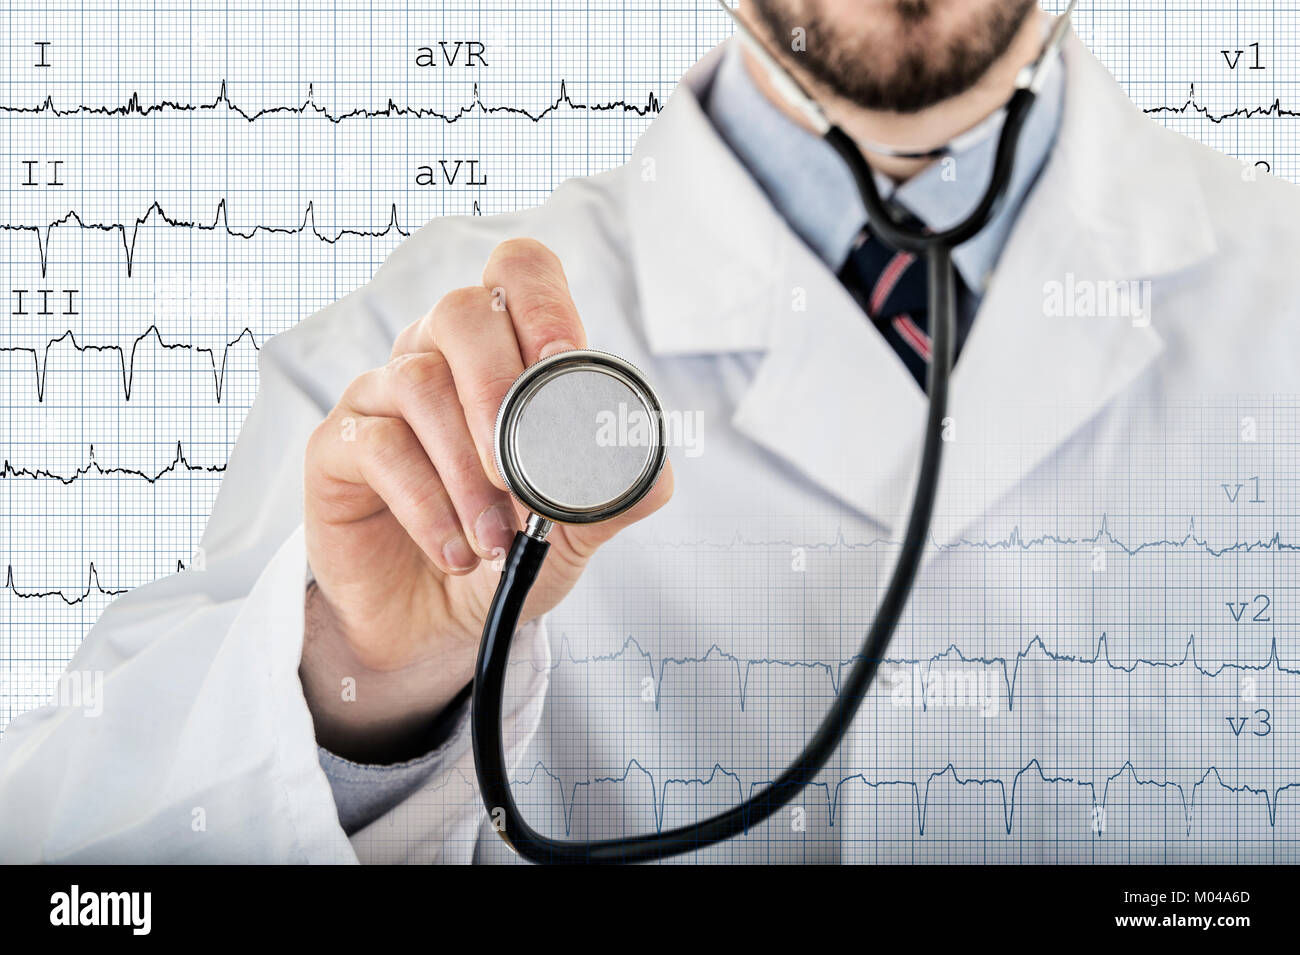 Männliche Kardiologe Arzt übersicht Stethoskop für Überprüfung mit elektrokardiogramm im Hintergrund Stockfoto